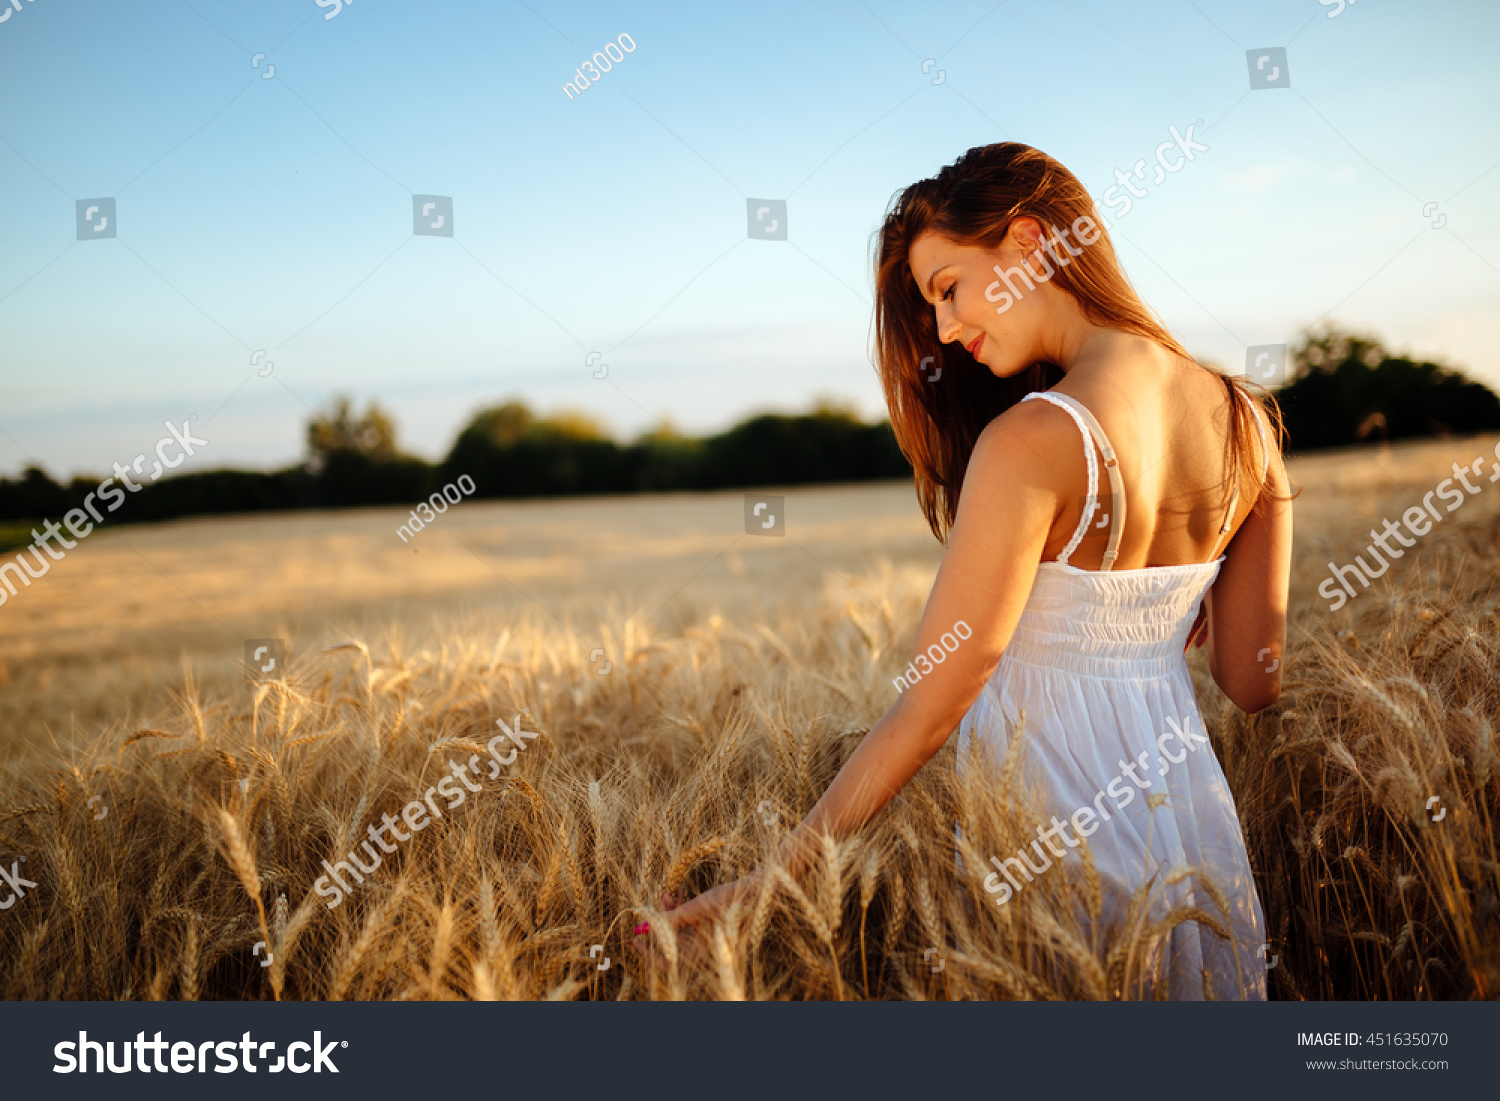 Romantic woman walking in golden fields of barley #451635070